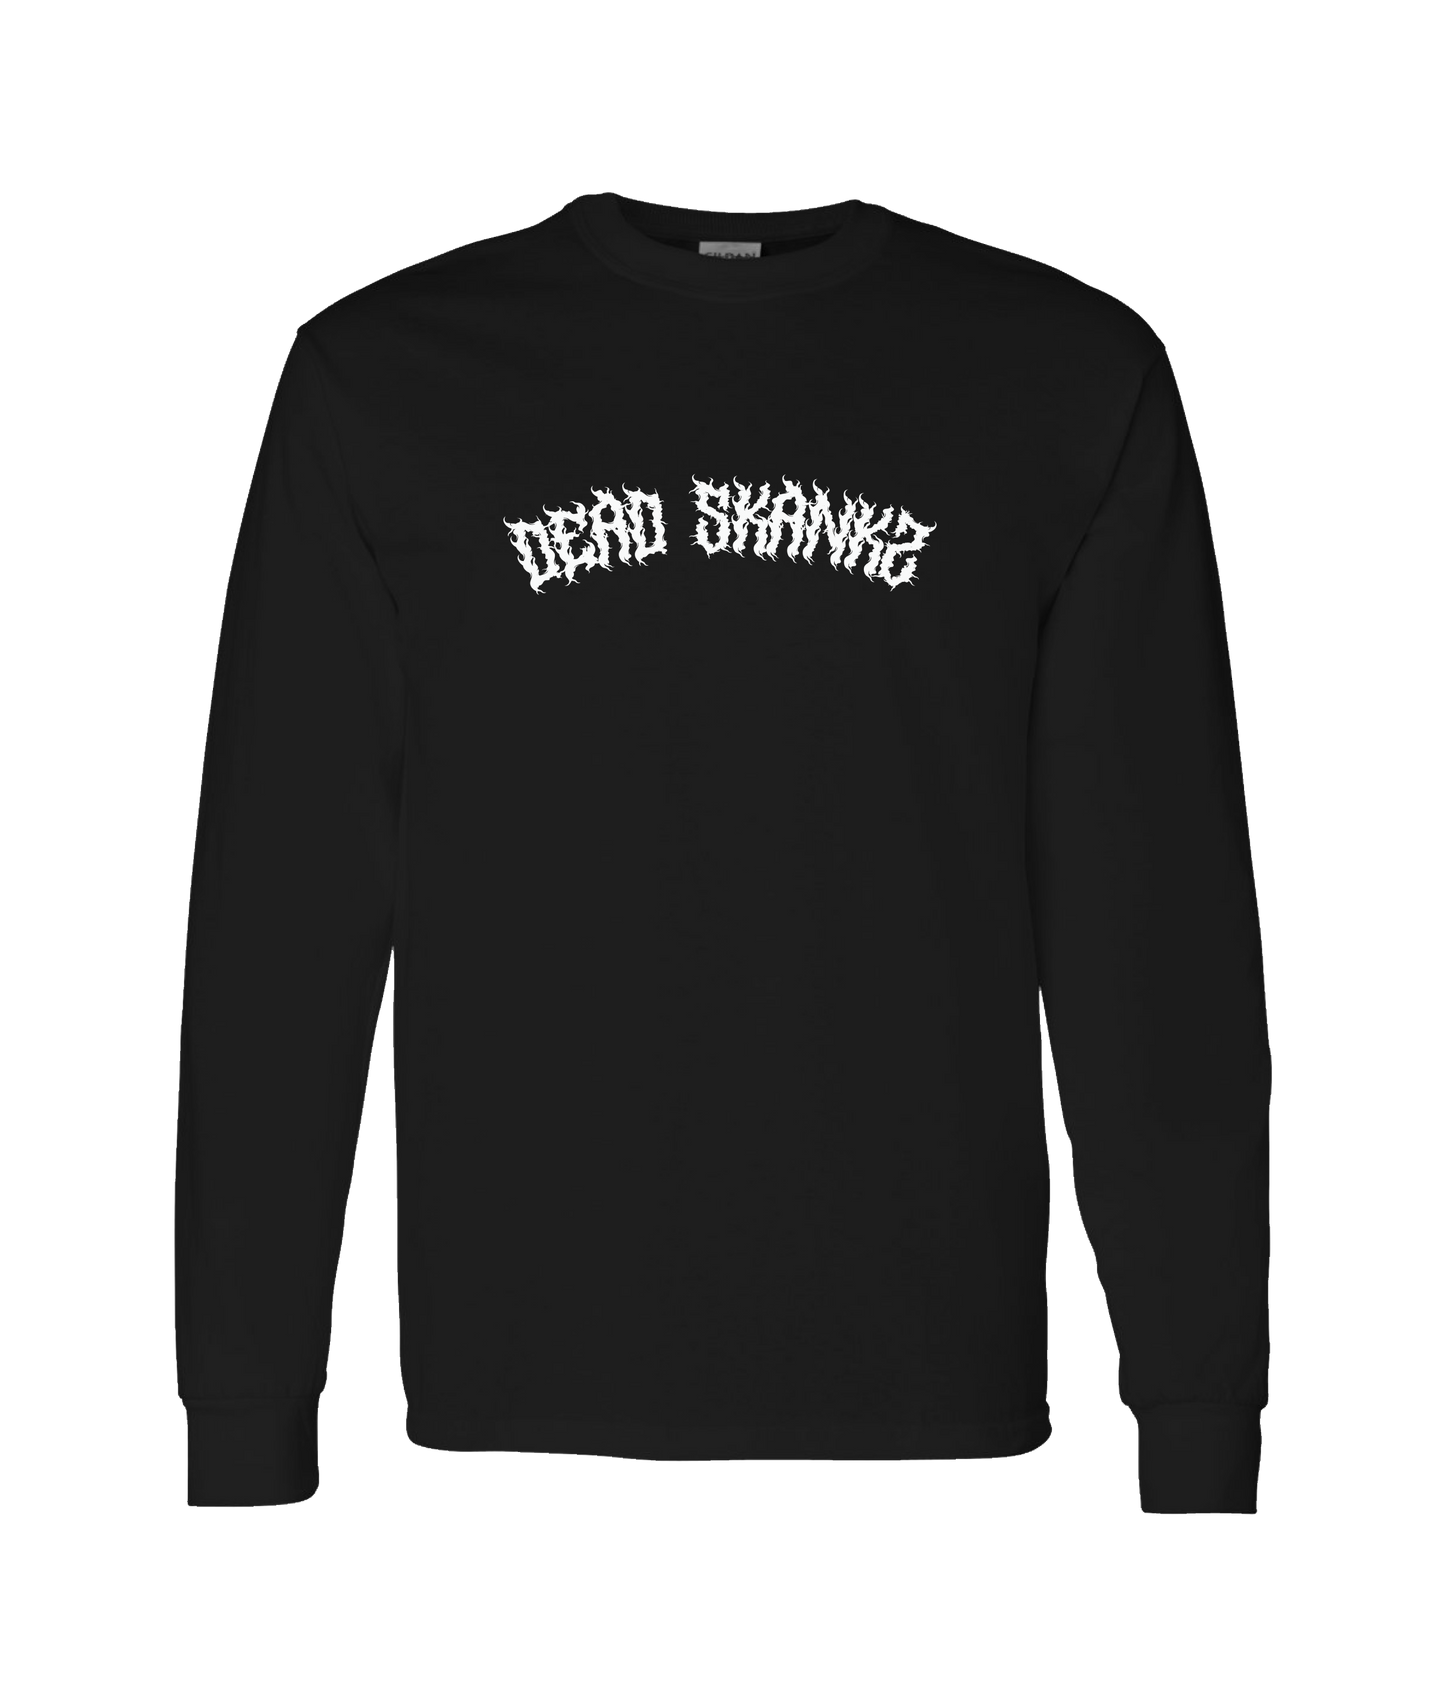 Dead Skankz - Logo - Black Long Sleeve T